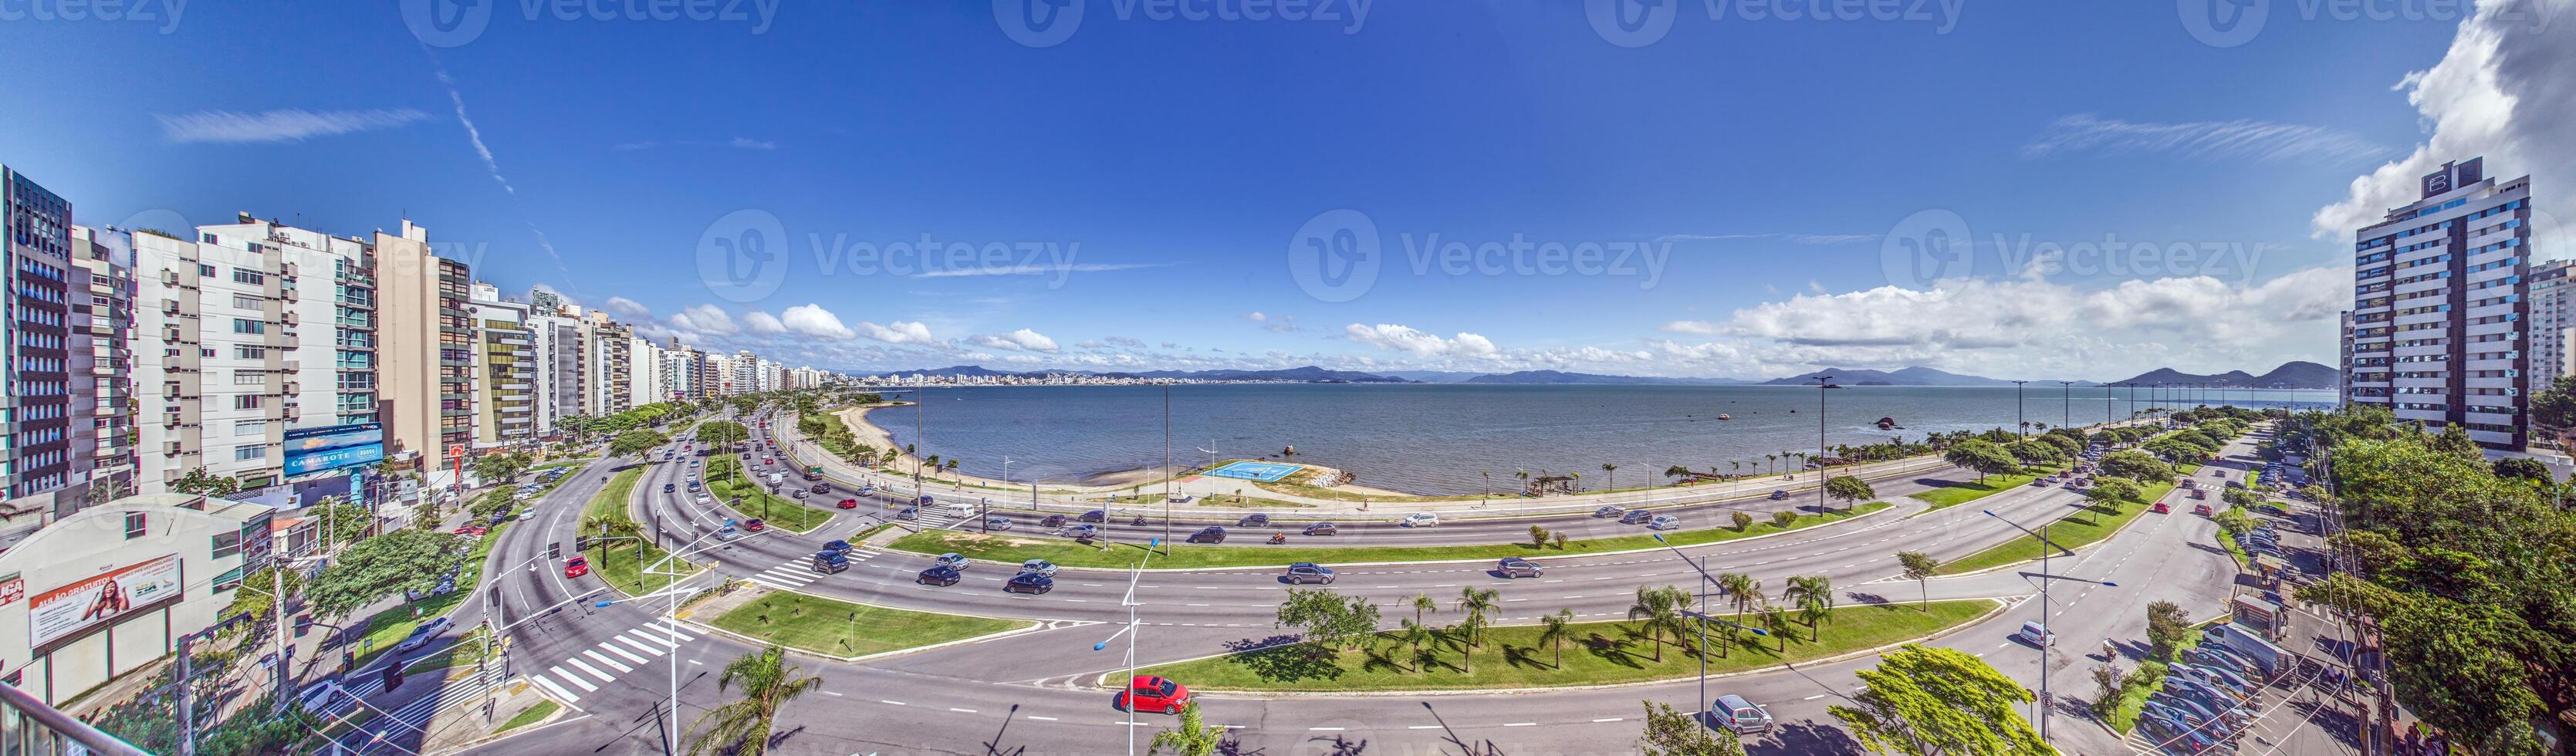 panoramique image de le côtier Autoroute dans le brésilien ville de florianopolis de un élevé position photo